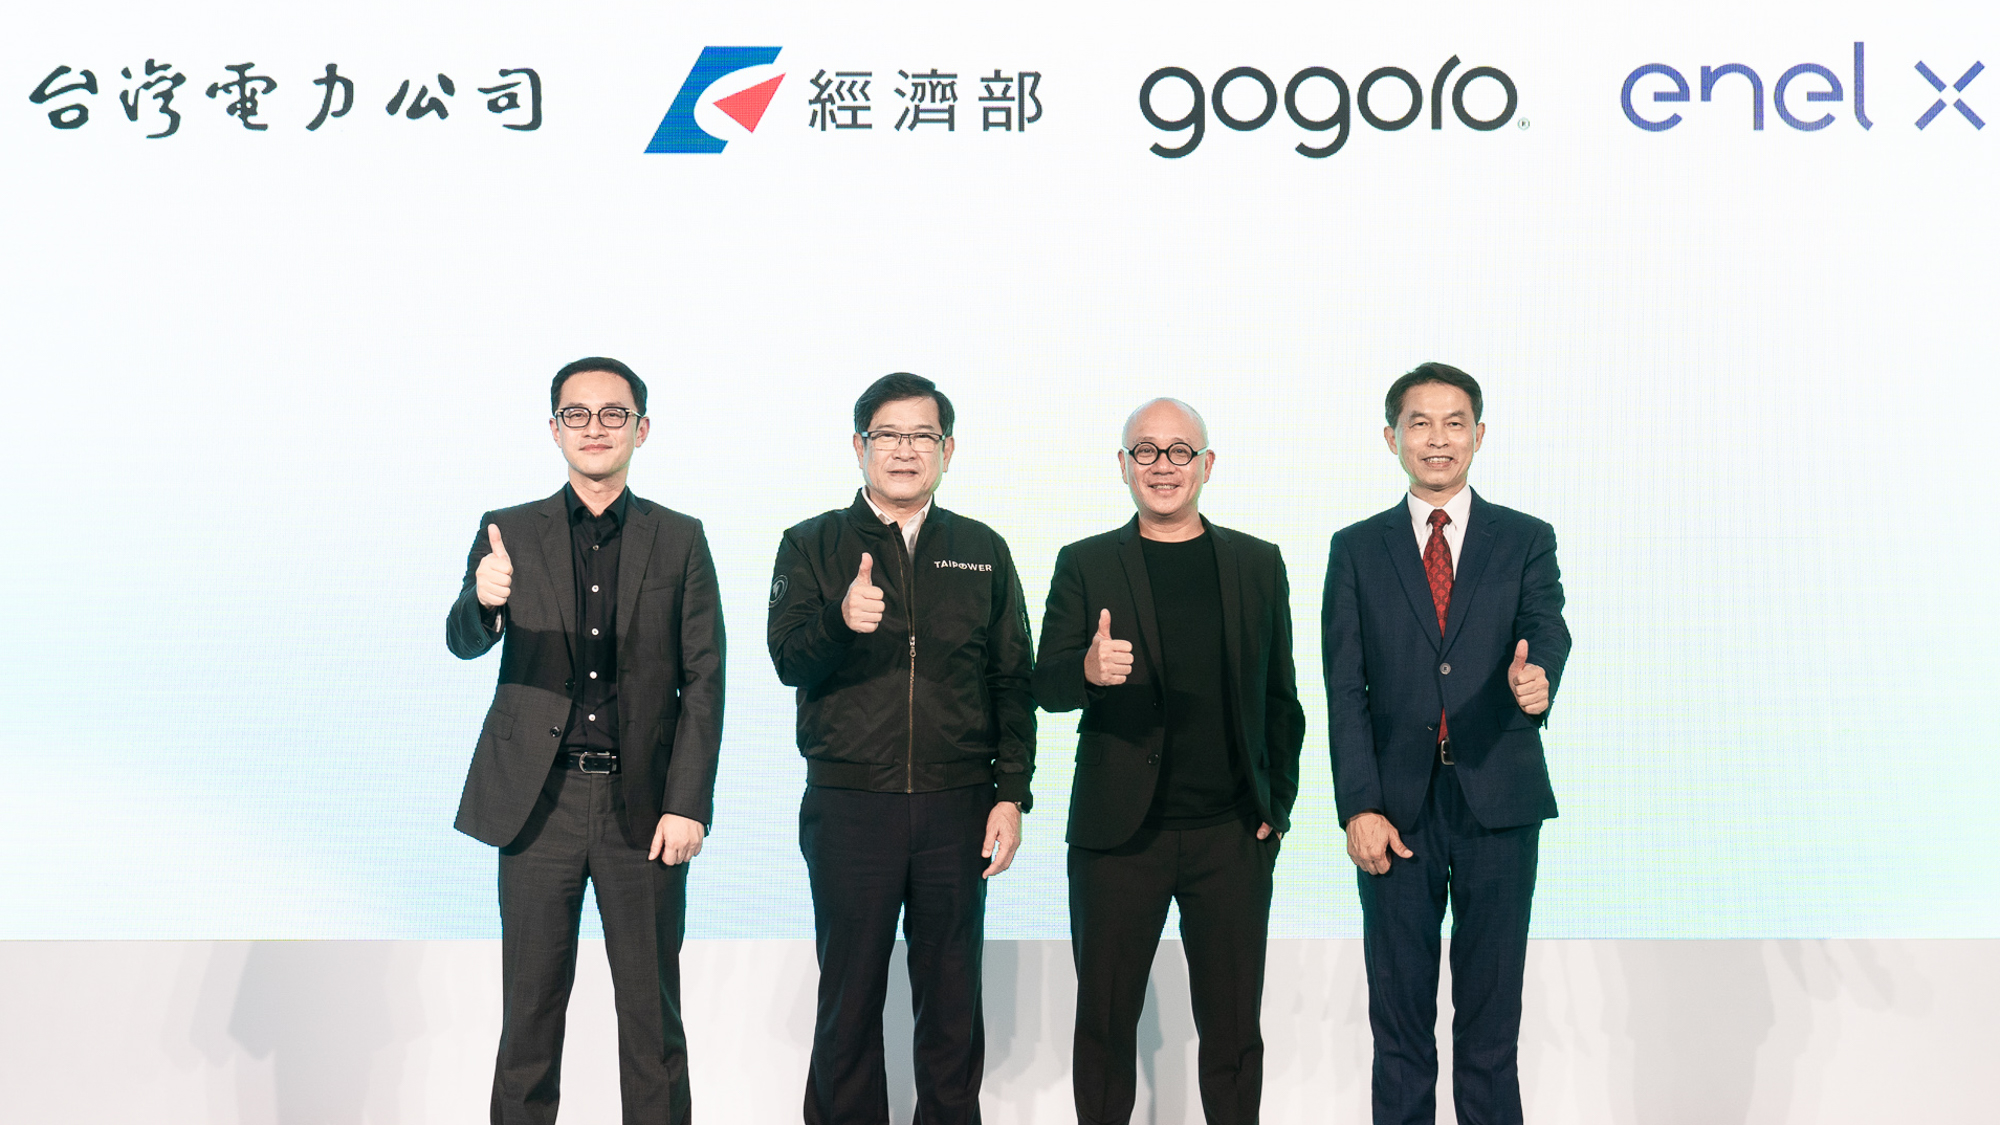 ▲ 台灣電力公司、Enel X 義電智慧能源、Gogoro® 三方齊力 實現電網供需平衡